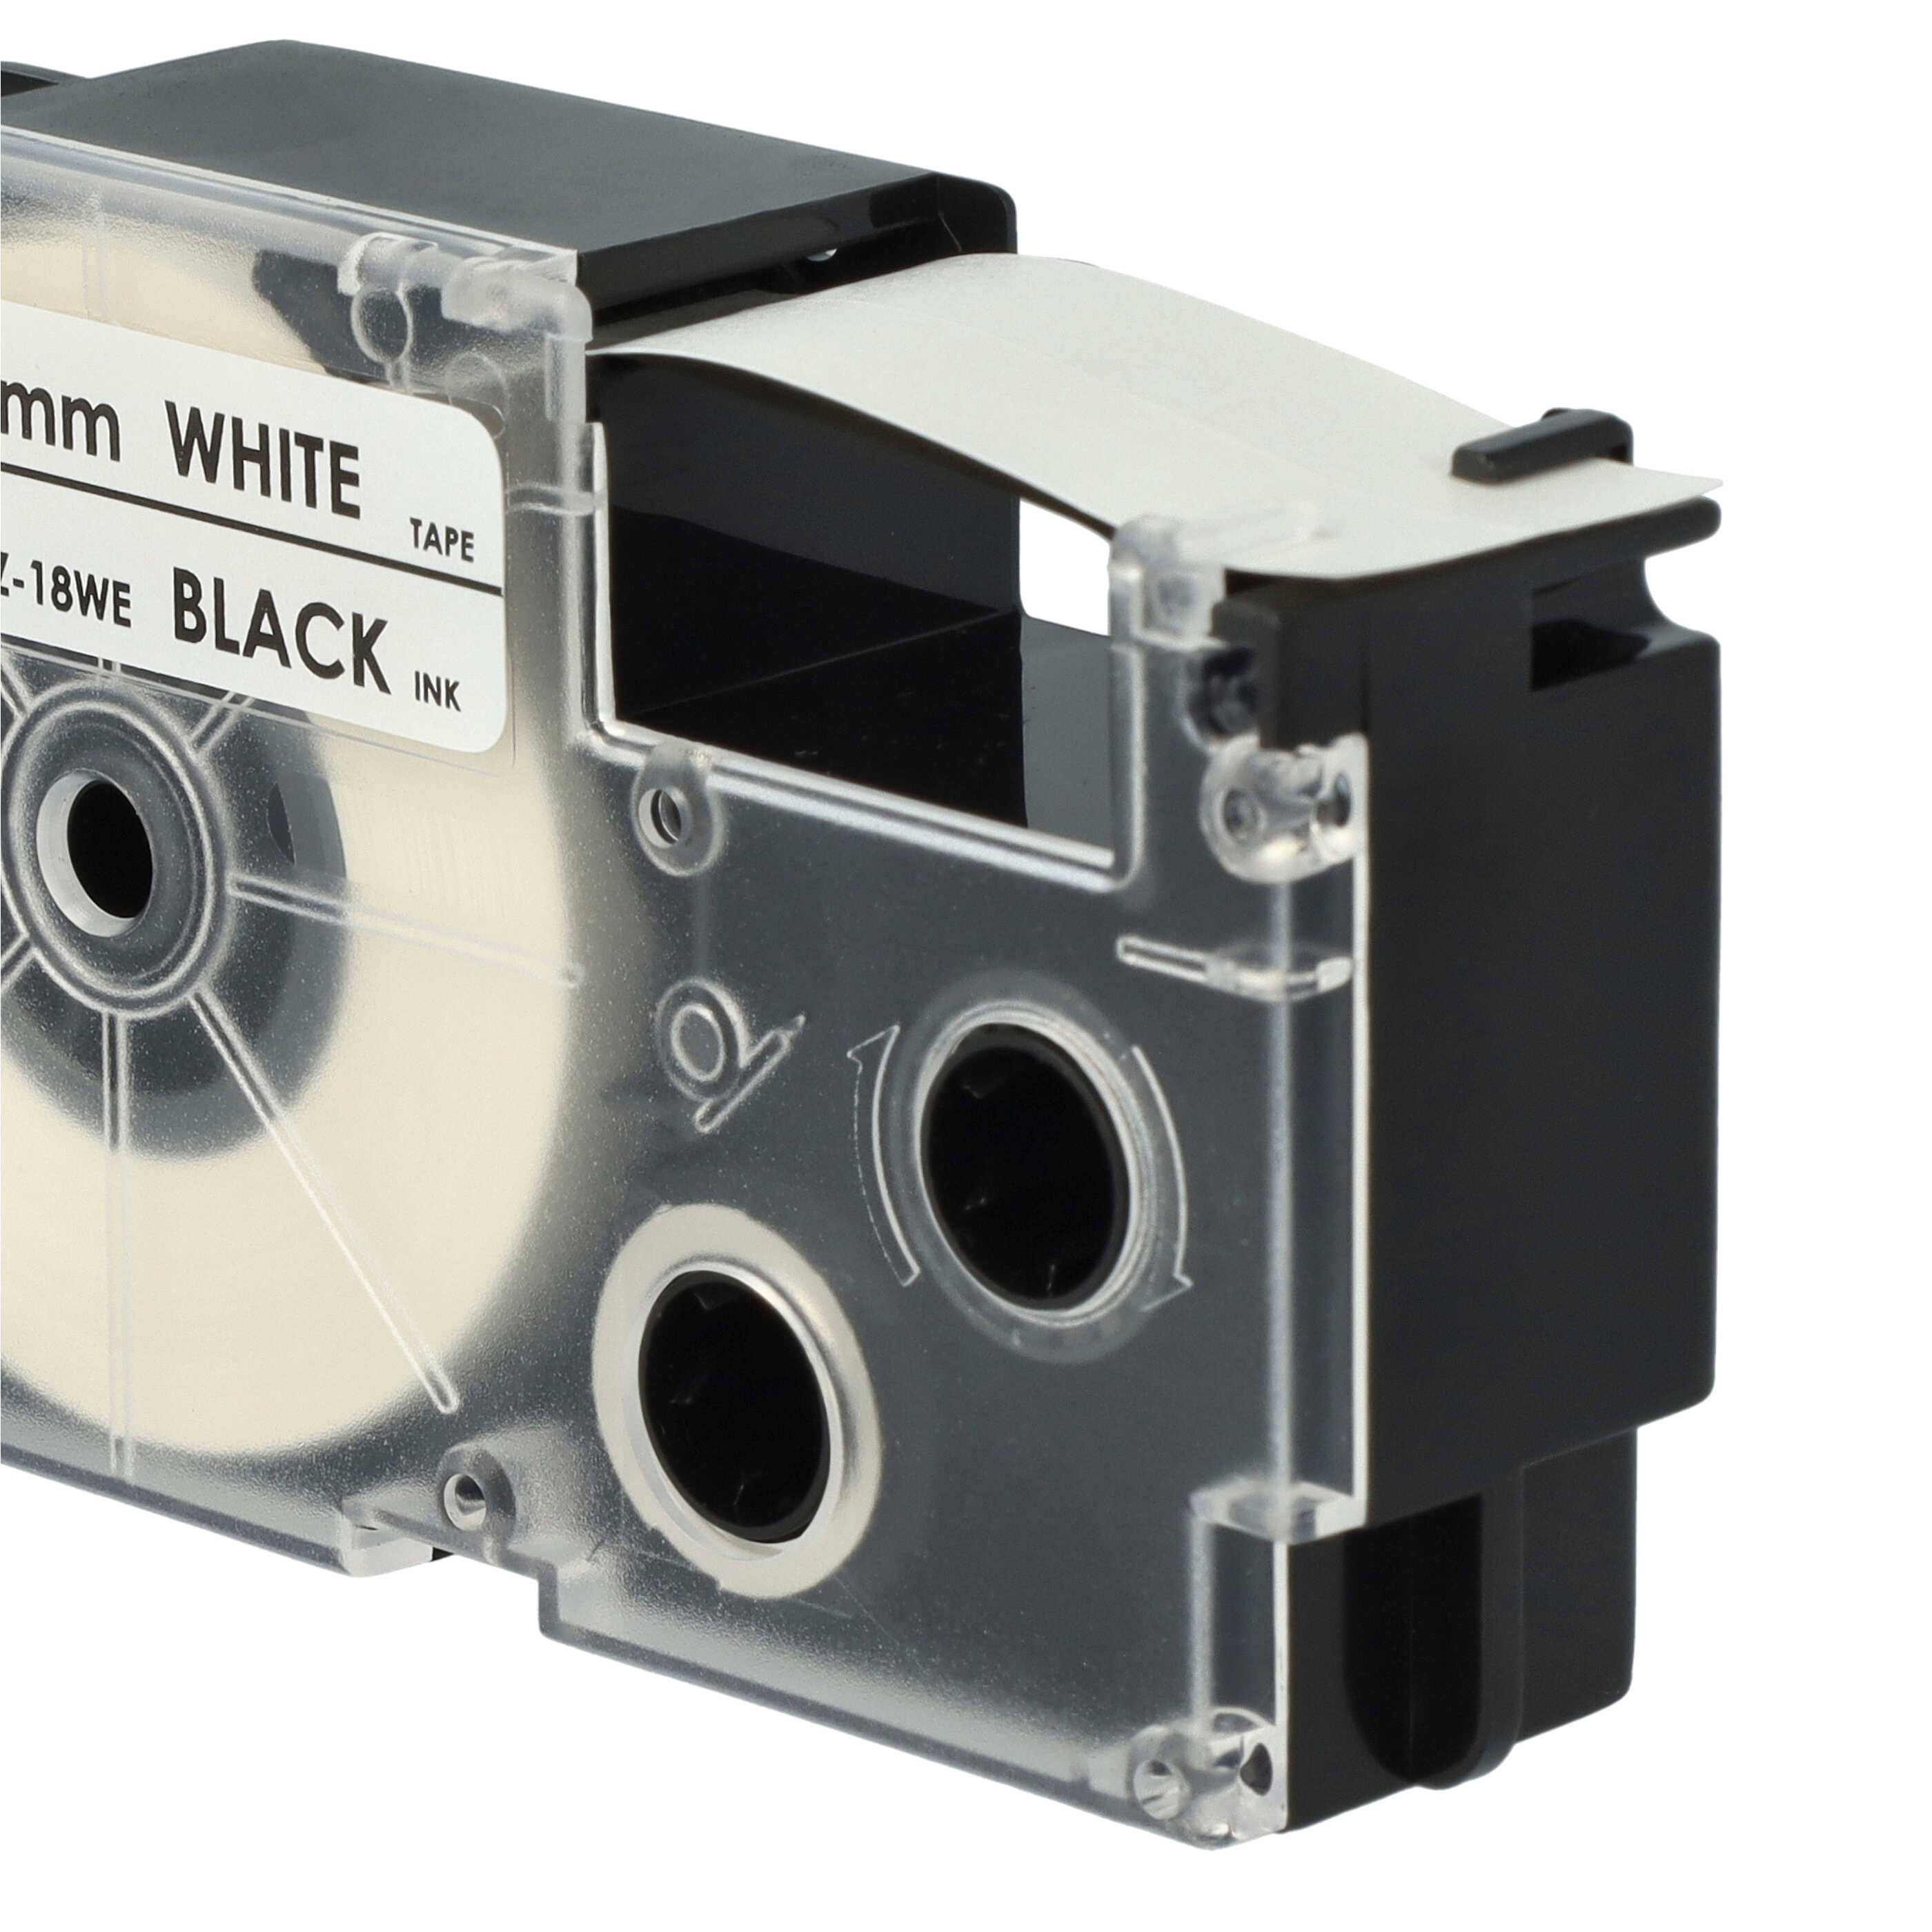 Casete cinta escritura reemplaza Casio XR-18WE, XR-18WE1 Negro su Blanco